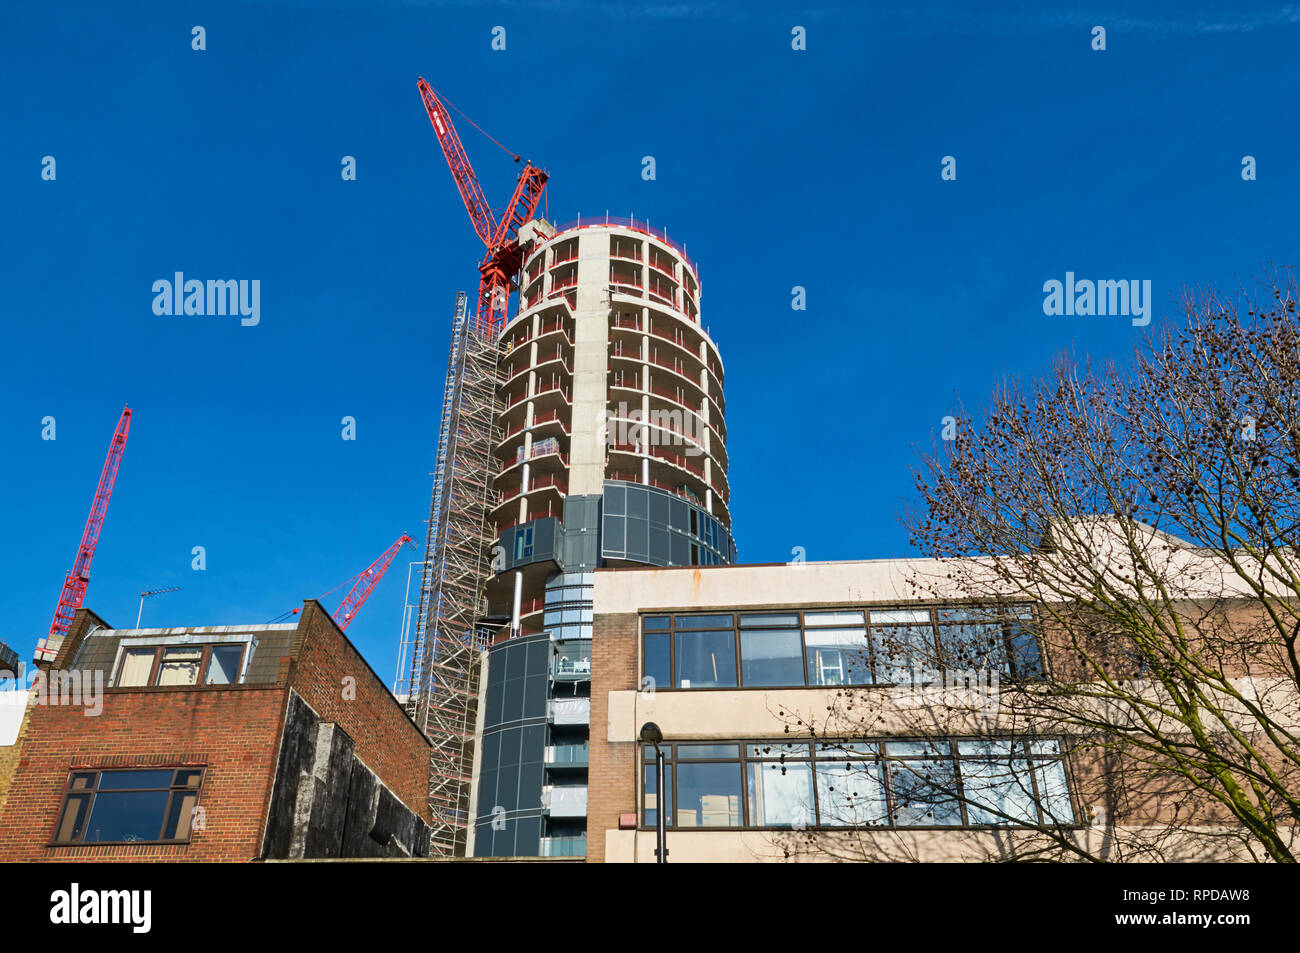 La torre principale della città a nord di sviluppo residenziale in costruzione, da Fonthill Road, Finsbury Park, North London REGNO UNITO Foto Stock